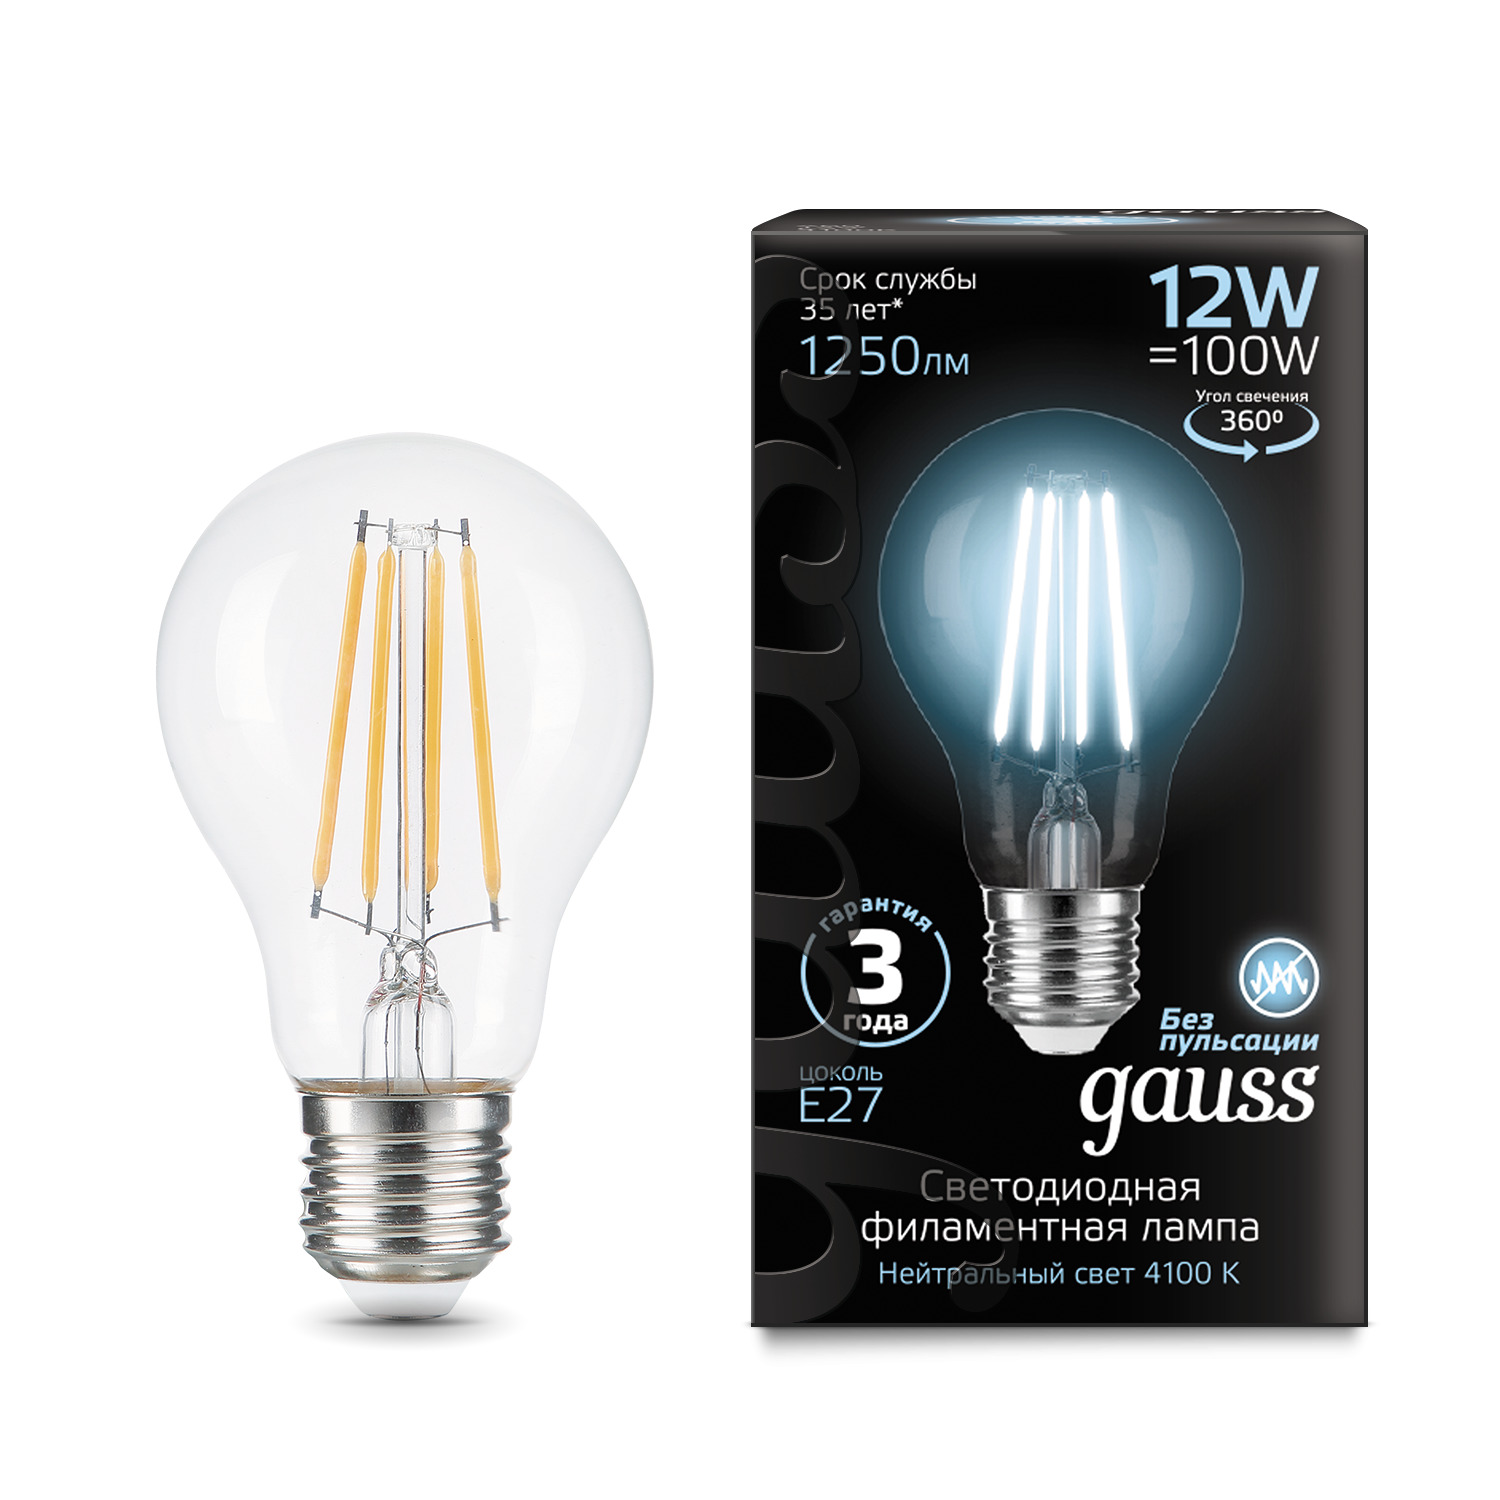 Лампа Gauss Filament 12W 4100К Е27 светодиодная лампа gauss а60 8w 780lm 4100к е27 102802208